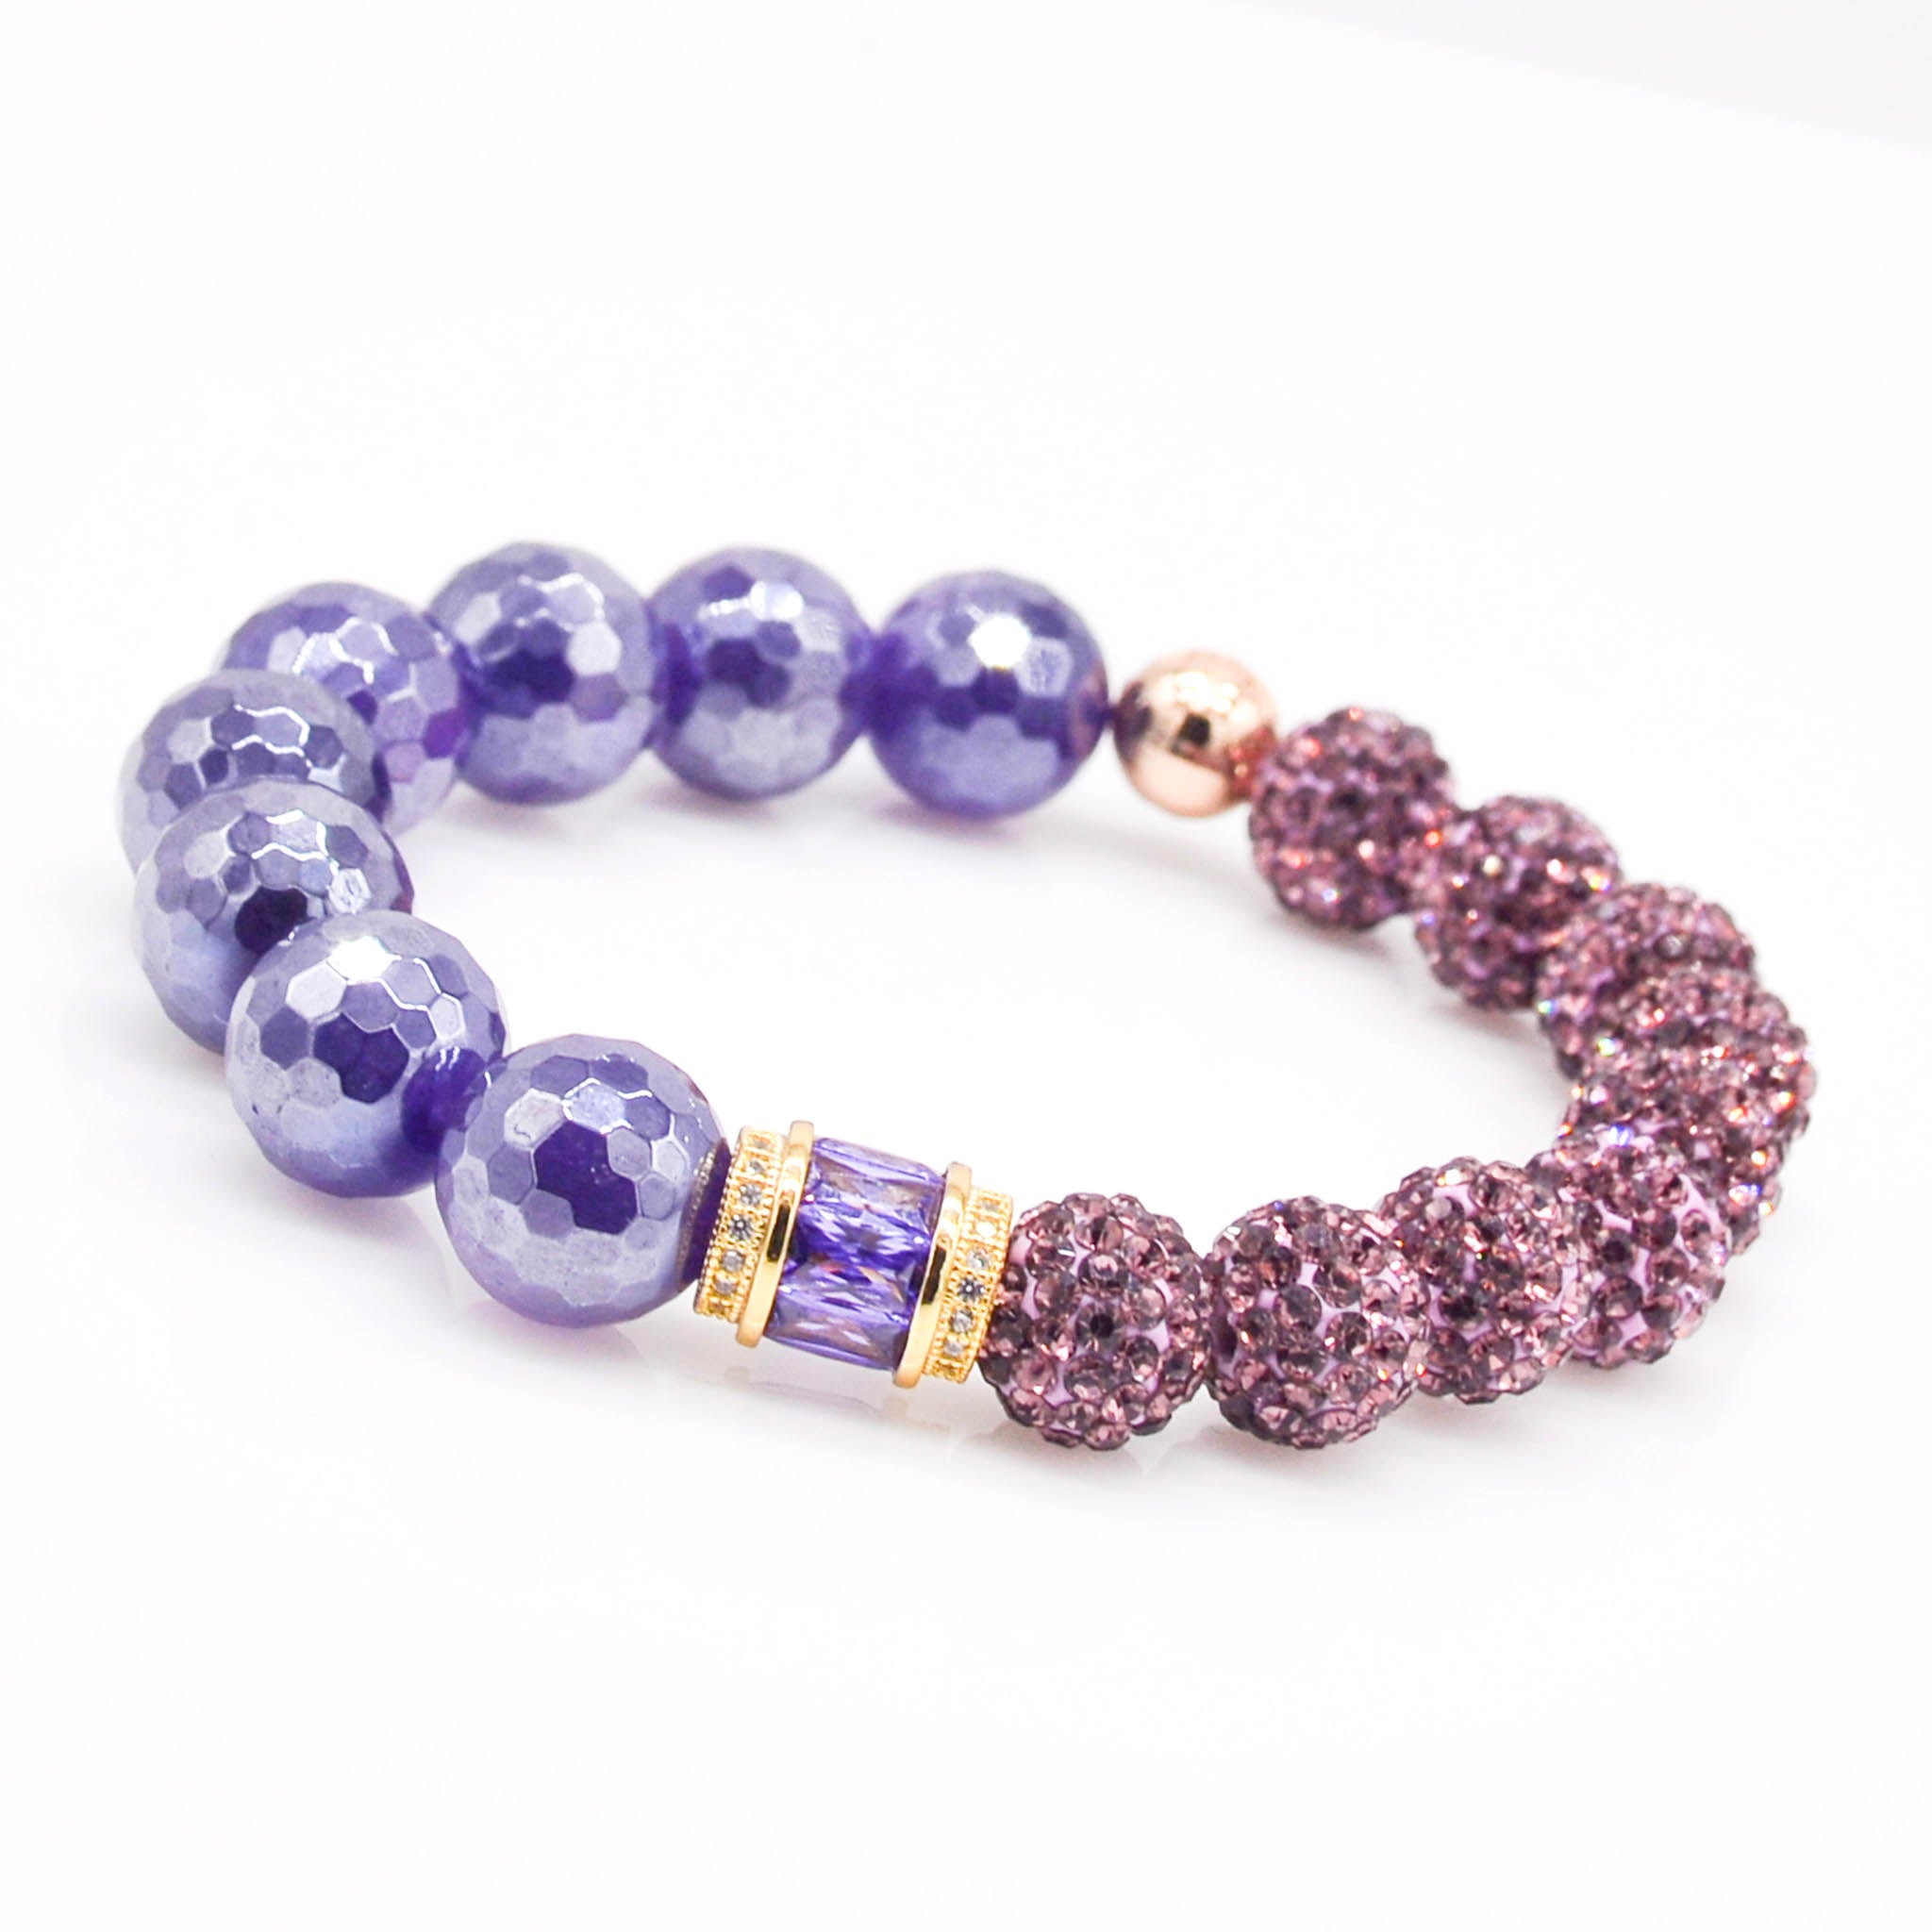 a purple amethyst beaded bracelet